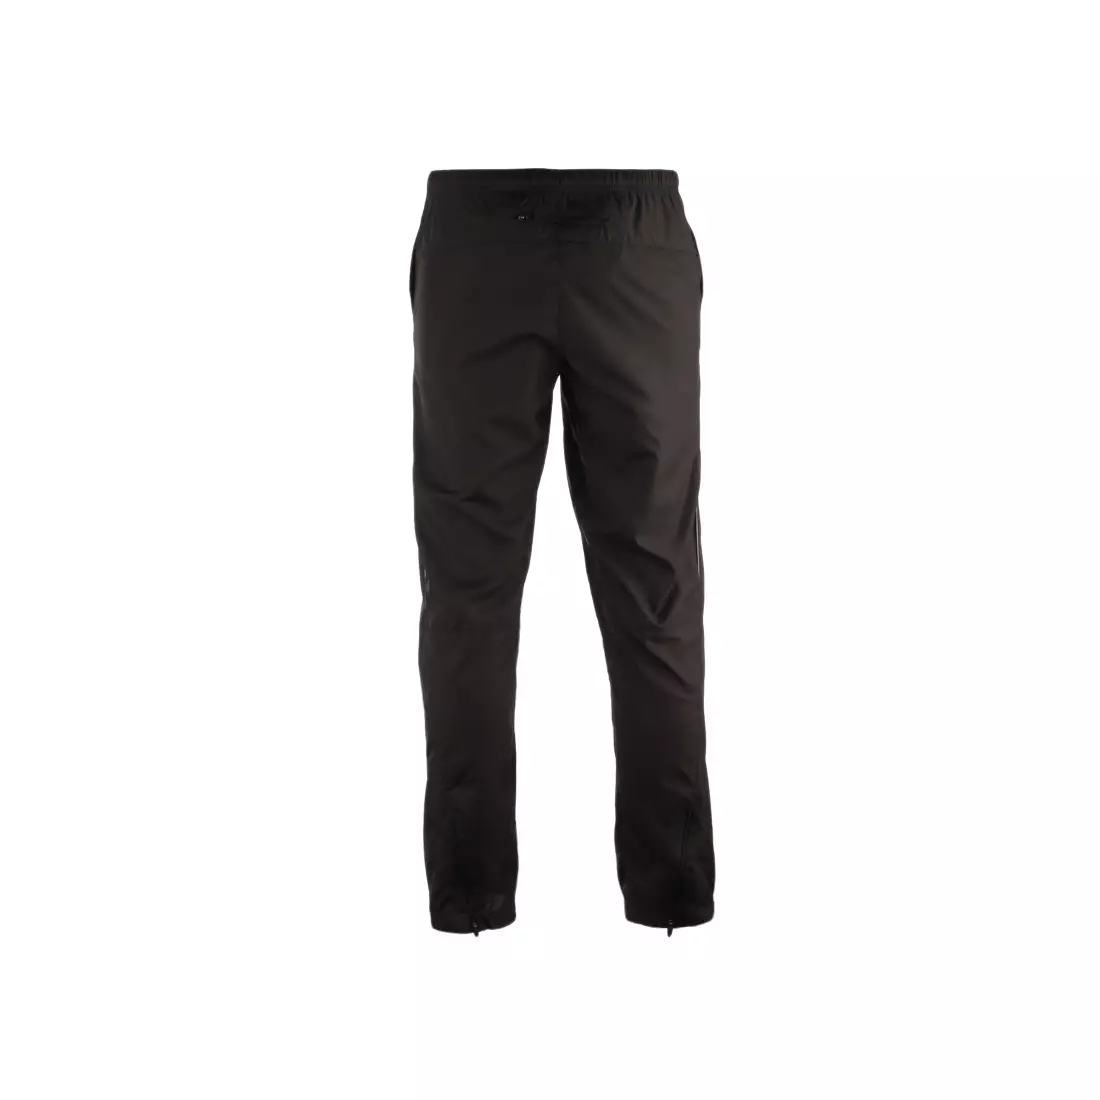 ASICS 321310-0900 - HERMES, voľné bežecké nohavice, farba: Čierna